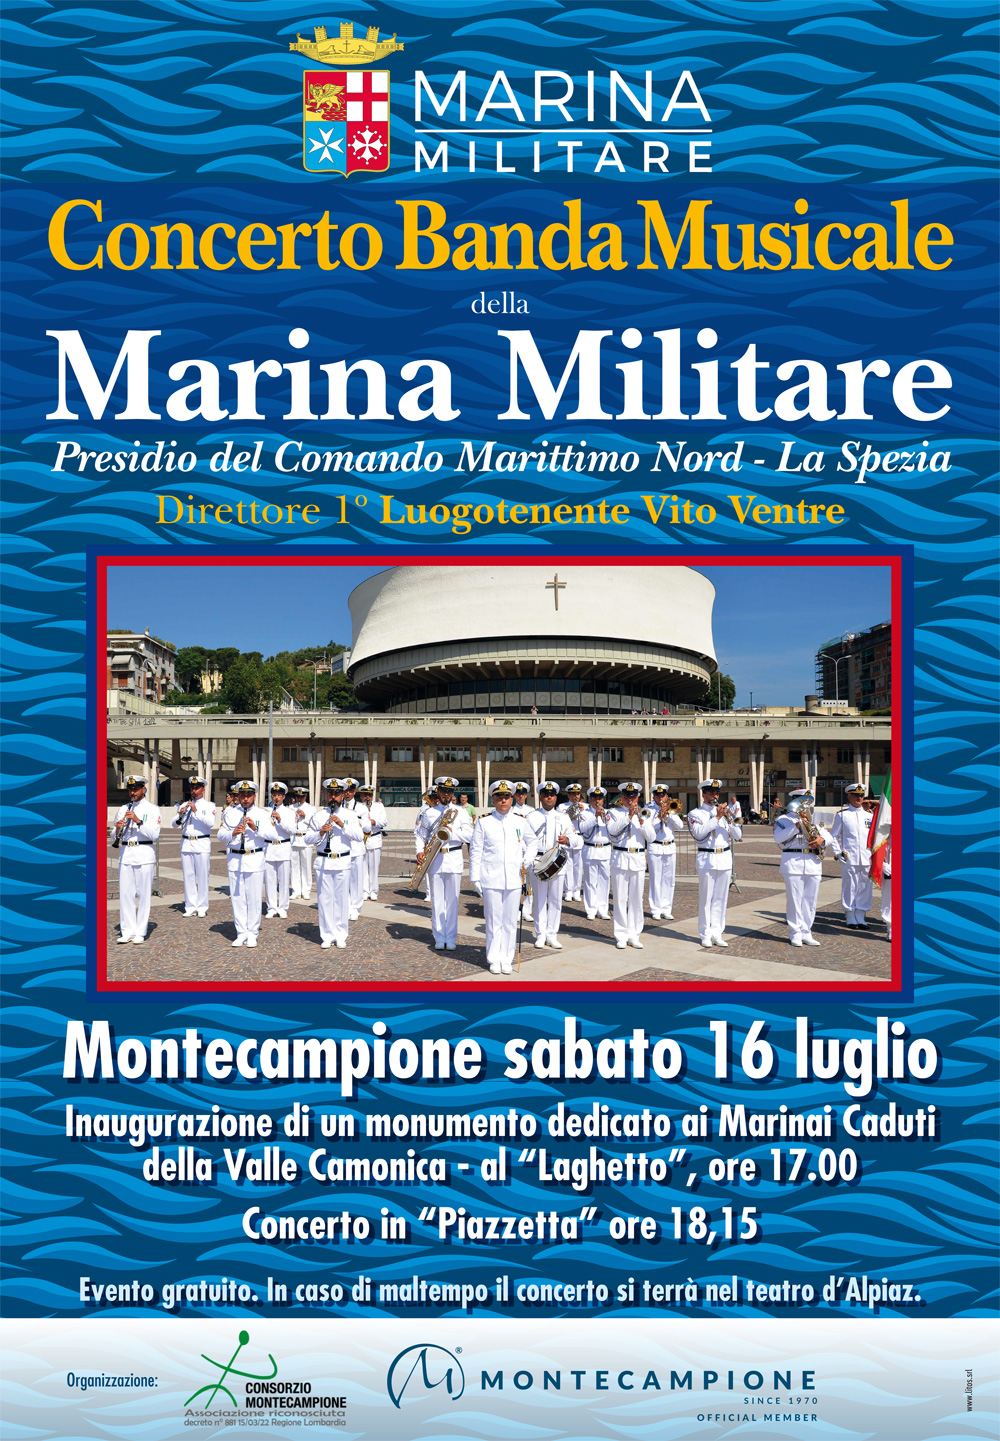 La voce del marinaio – 22.7.2022, a Montecampione Concerto della Banda del Presidio Militare del Comando Marittimo Militare del Nord